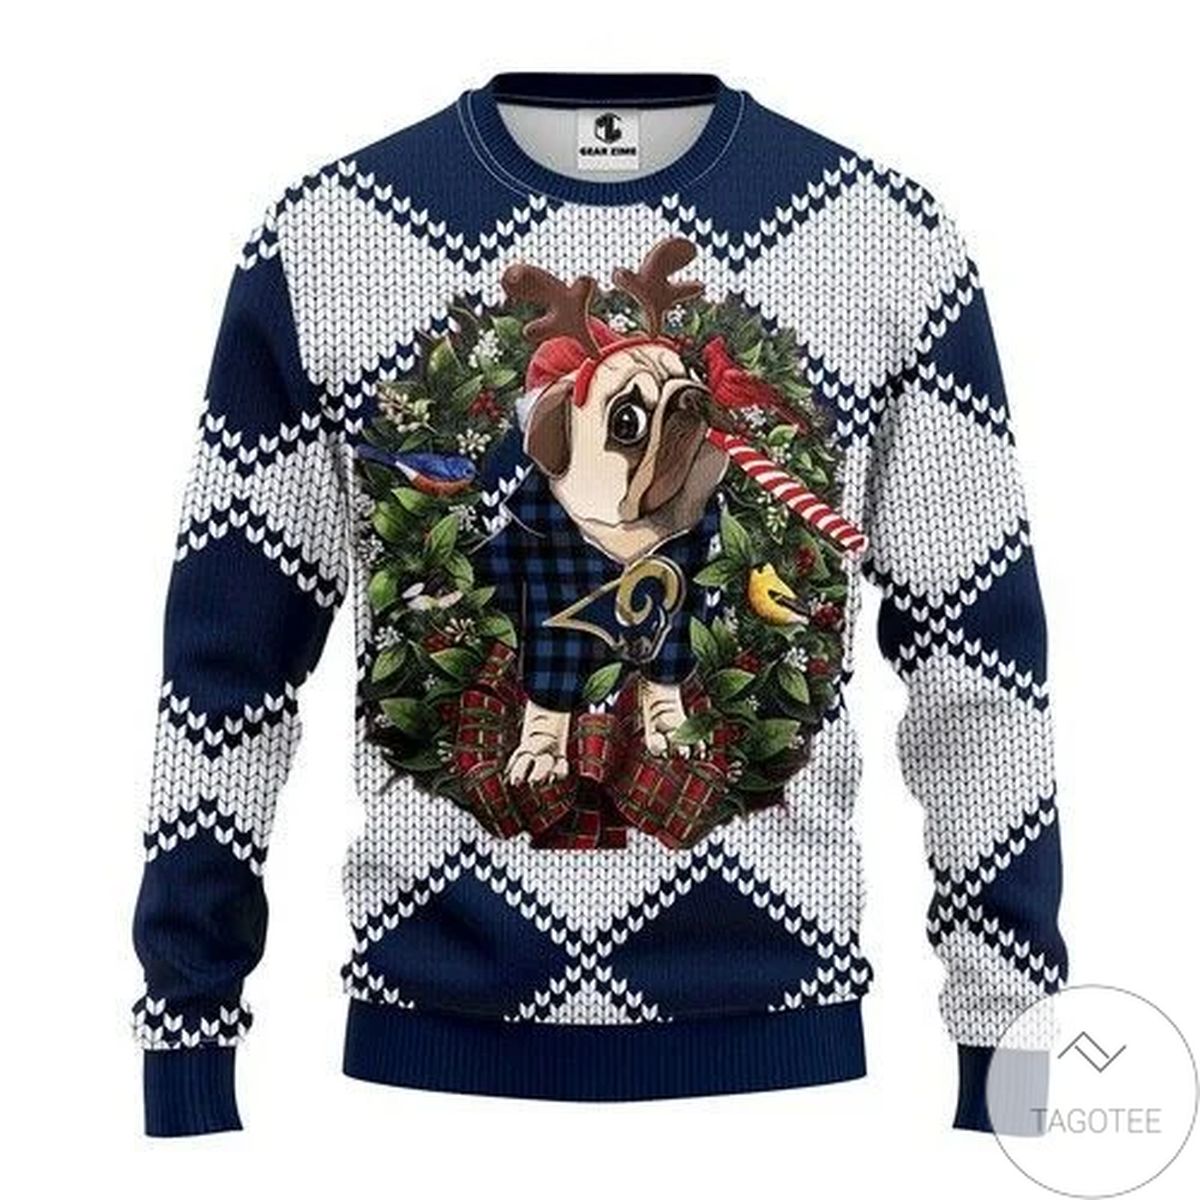 Nfl Los Angeles Rams Pug Dog Ugly Christmas Sweater